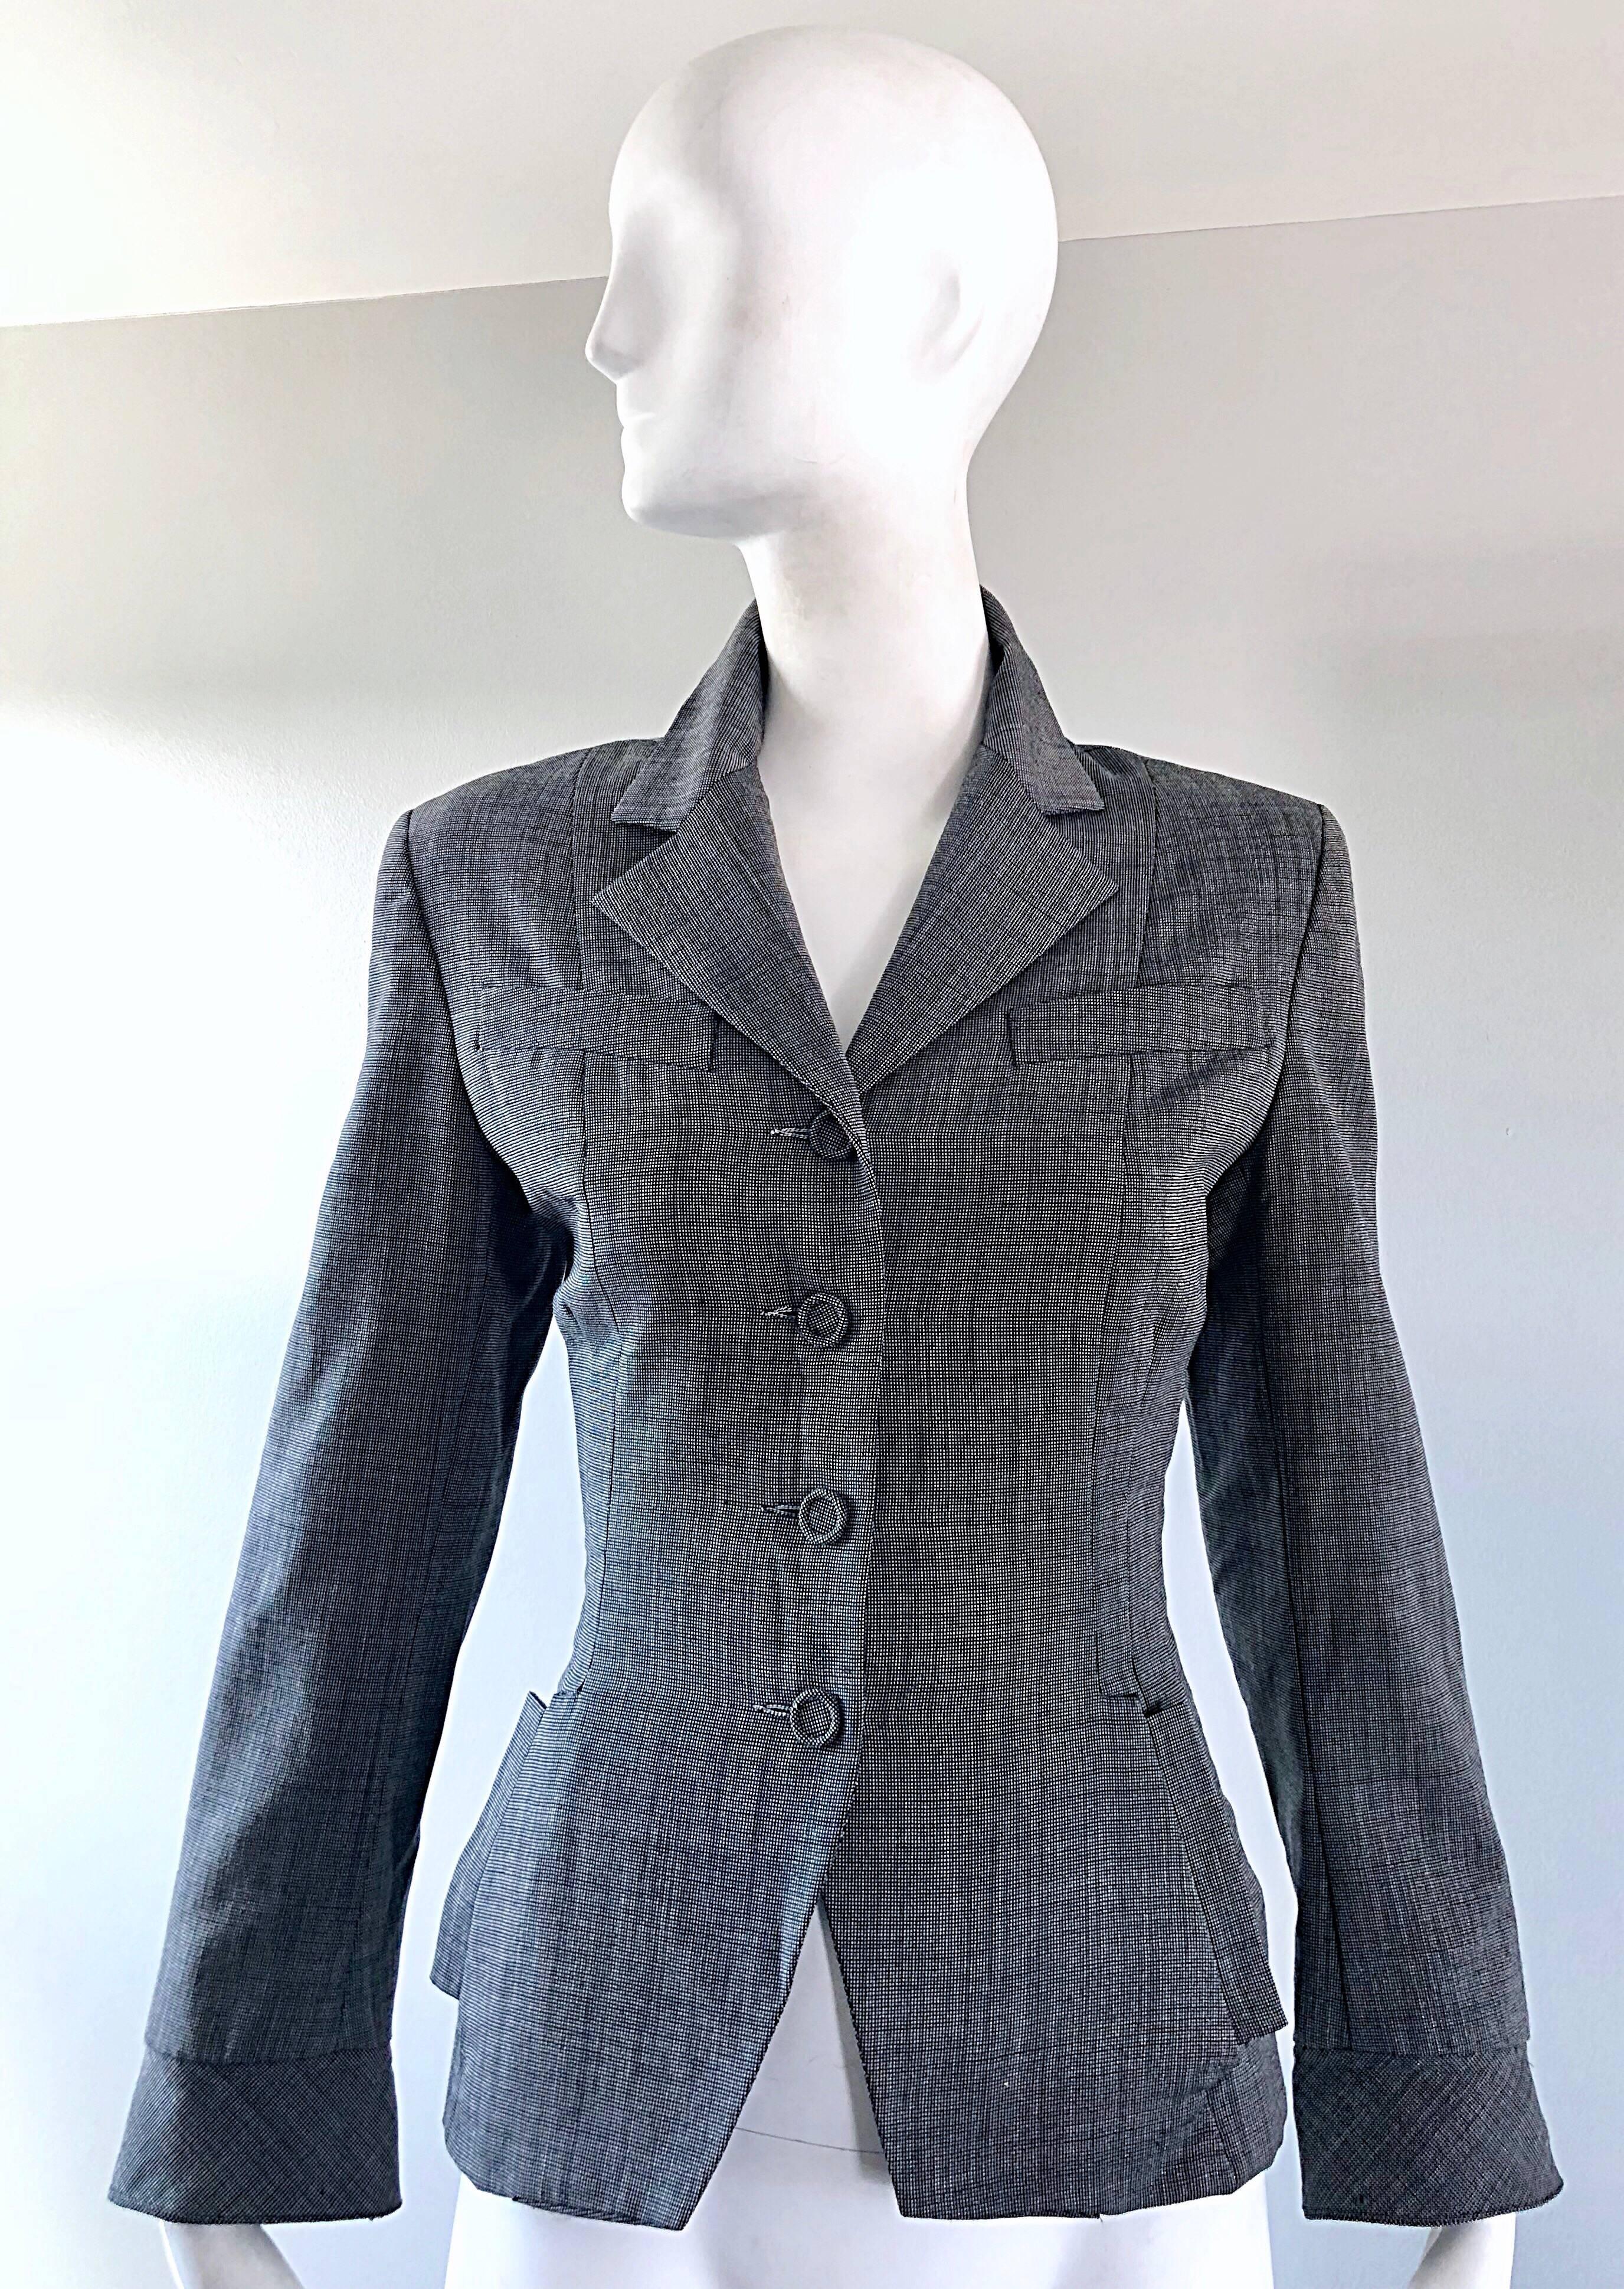 Chic vintage NORMA KAMALI 80s fait 40s gris crop blazer jacket ! Gris foncé / damier noir et blanc font la couleur parfaite pour un dray ! Merveilleuse coupe ajustée, avec une ode aux années 1940. Quatre boutons recouverts de tissu sur le devant,